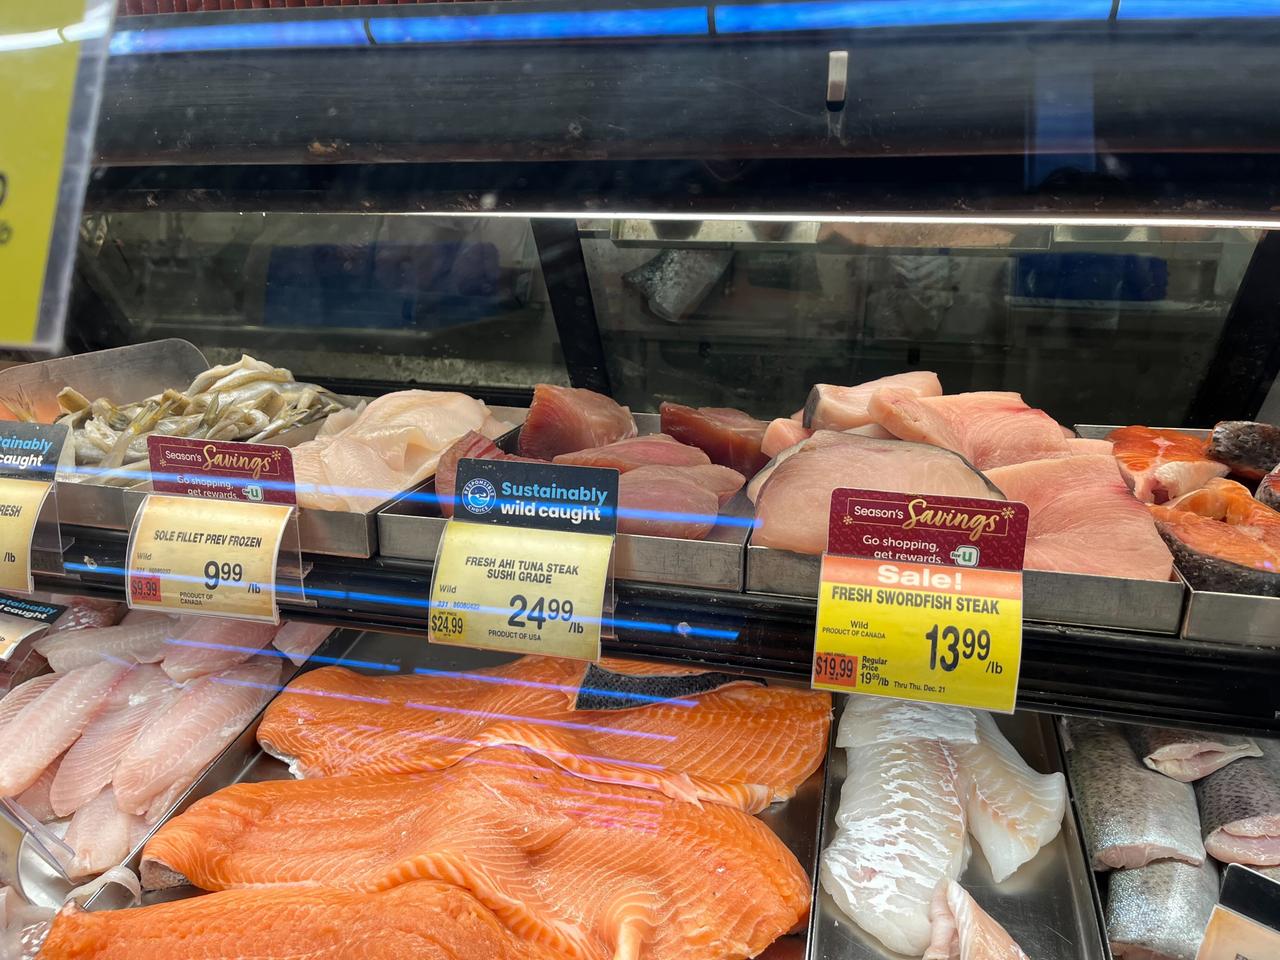 在美国波士顿一家超市购买的新鲜鱼。 有一条消息说“可持续野生捕获”。在美国，人们对可持续捕捞的关注日益增加。